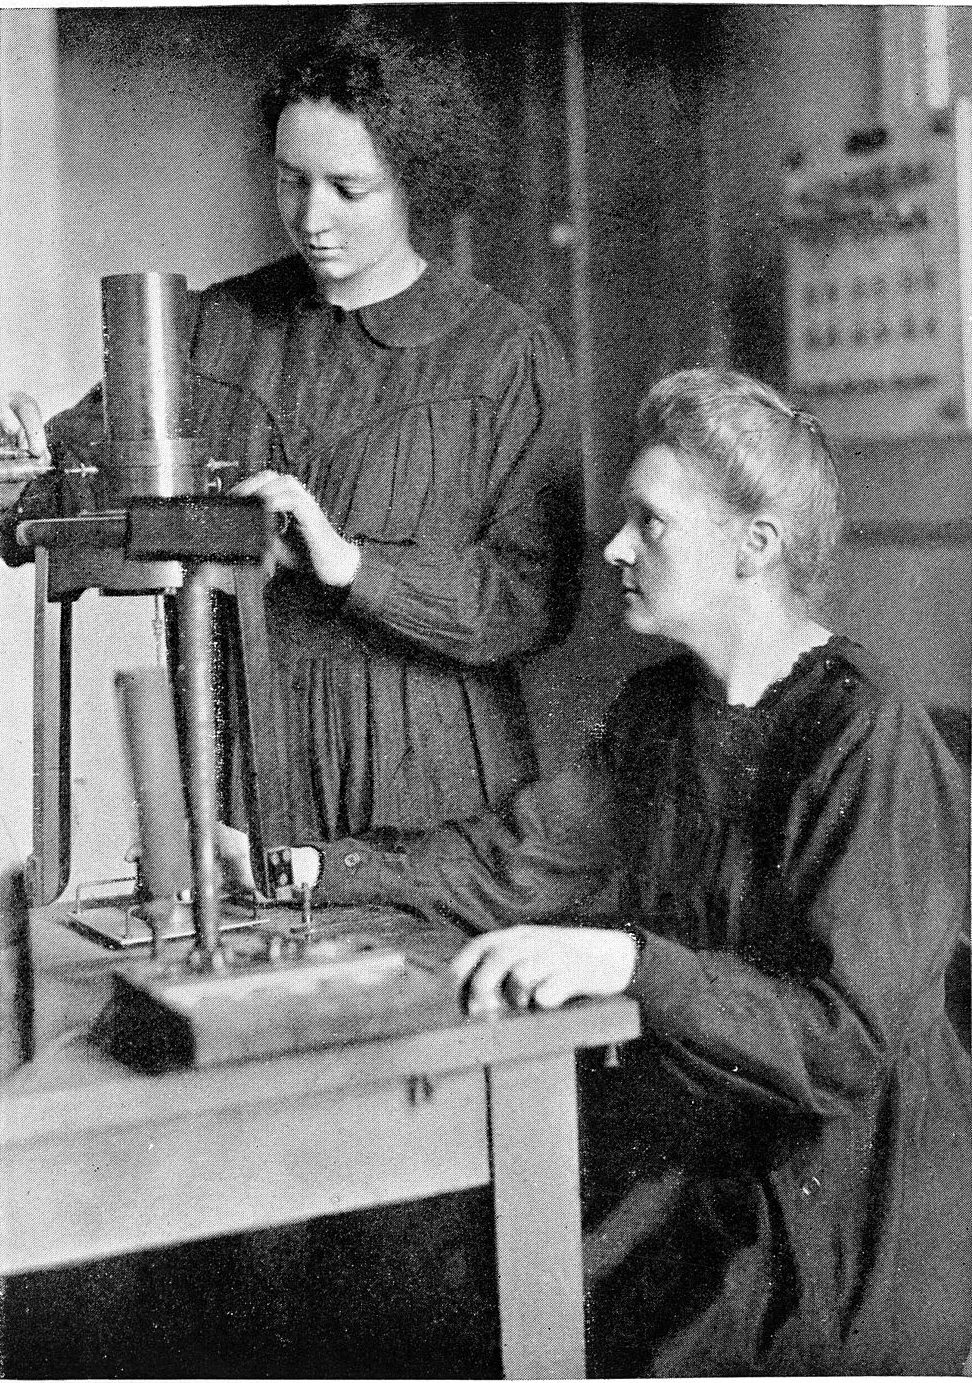 Más de 80 años después de su muerte, los restos y objetos de Marie Curie siguen siendo extremadamente radiactivos -Revista Interesante